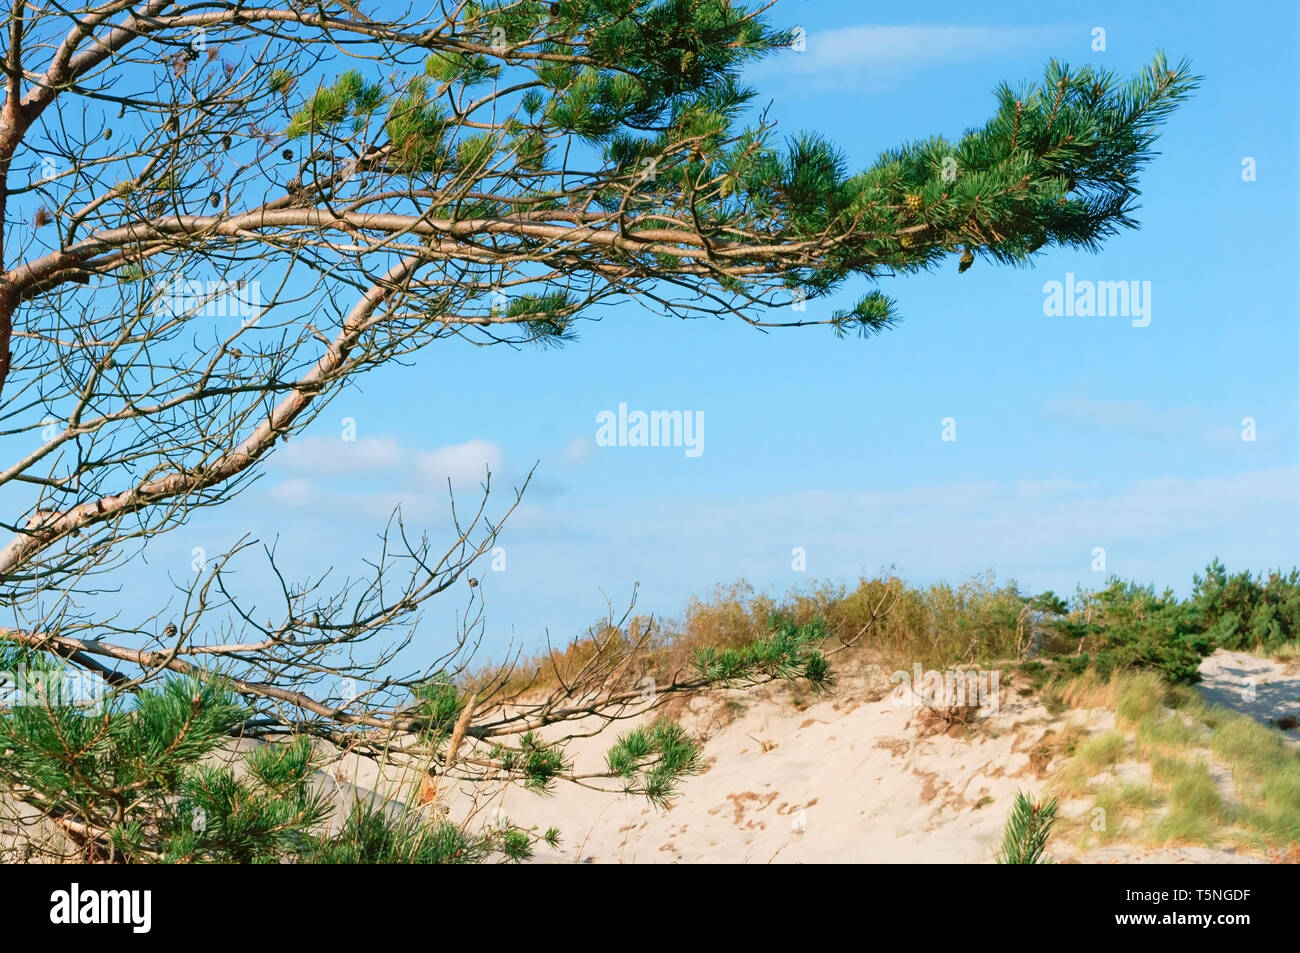 Direction générale de la dune de sable et de pins, forêt de pins sur la mer Banque D'Images